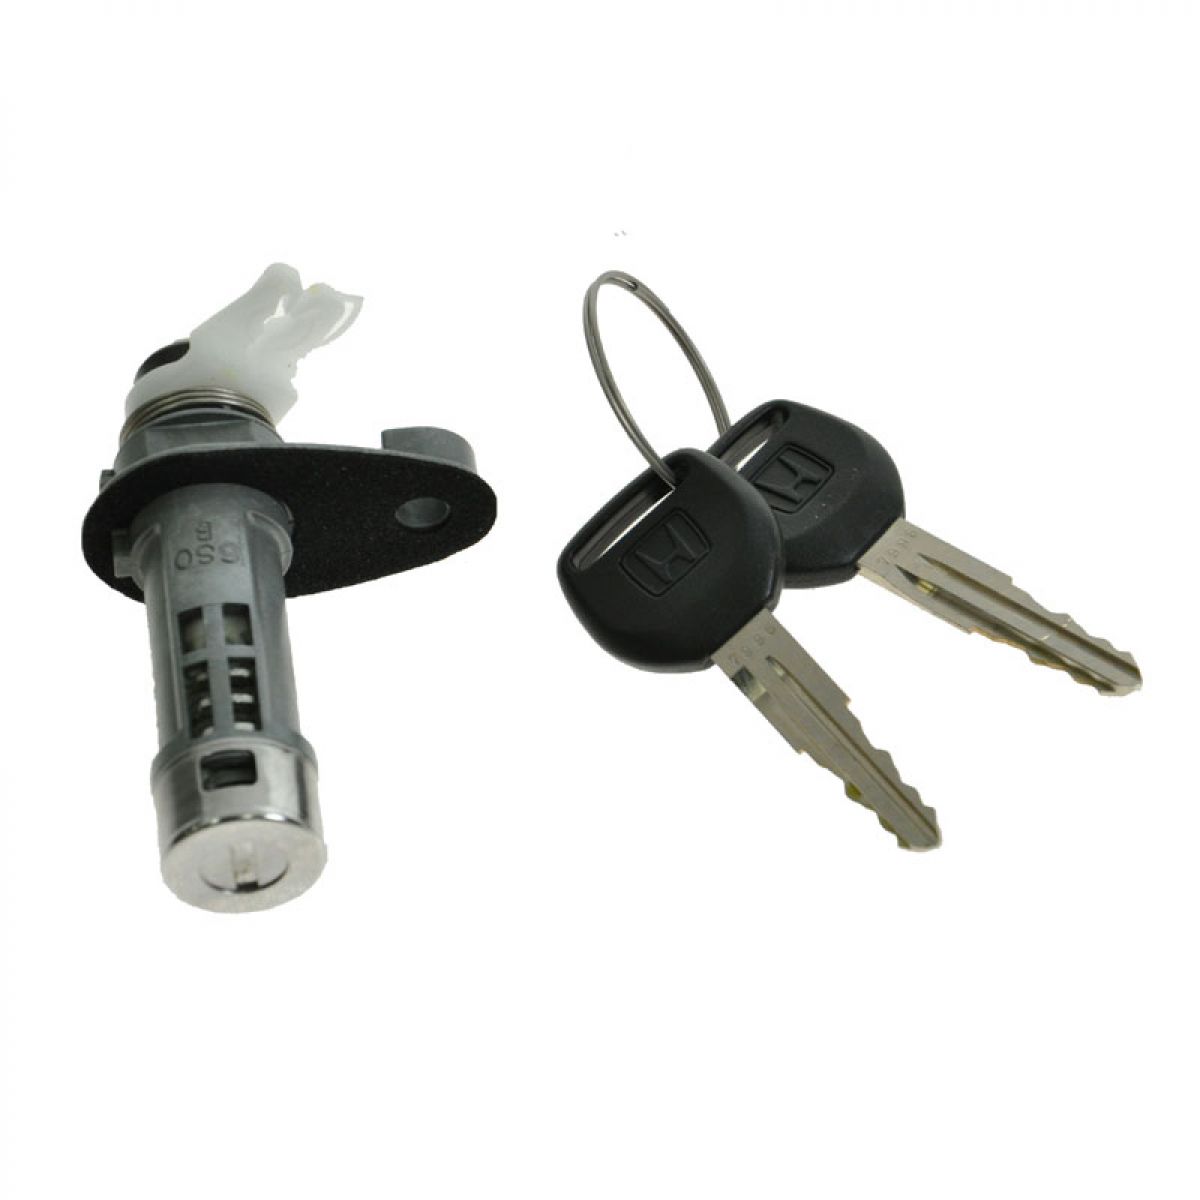 Honda accord and keys locked in #5